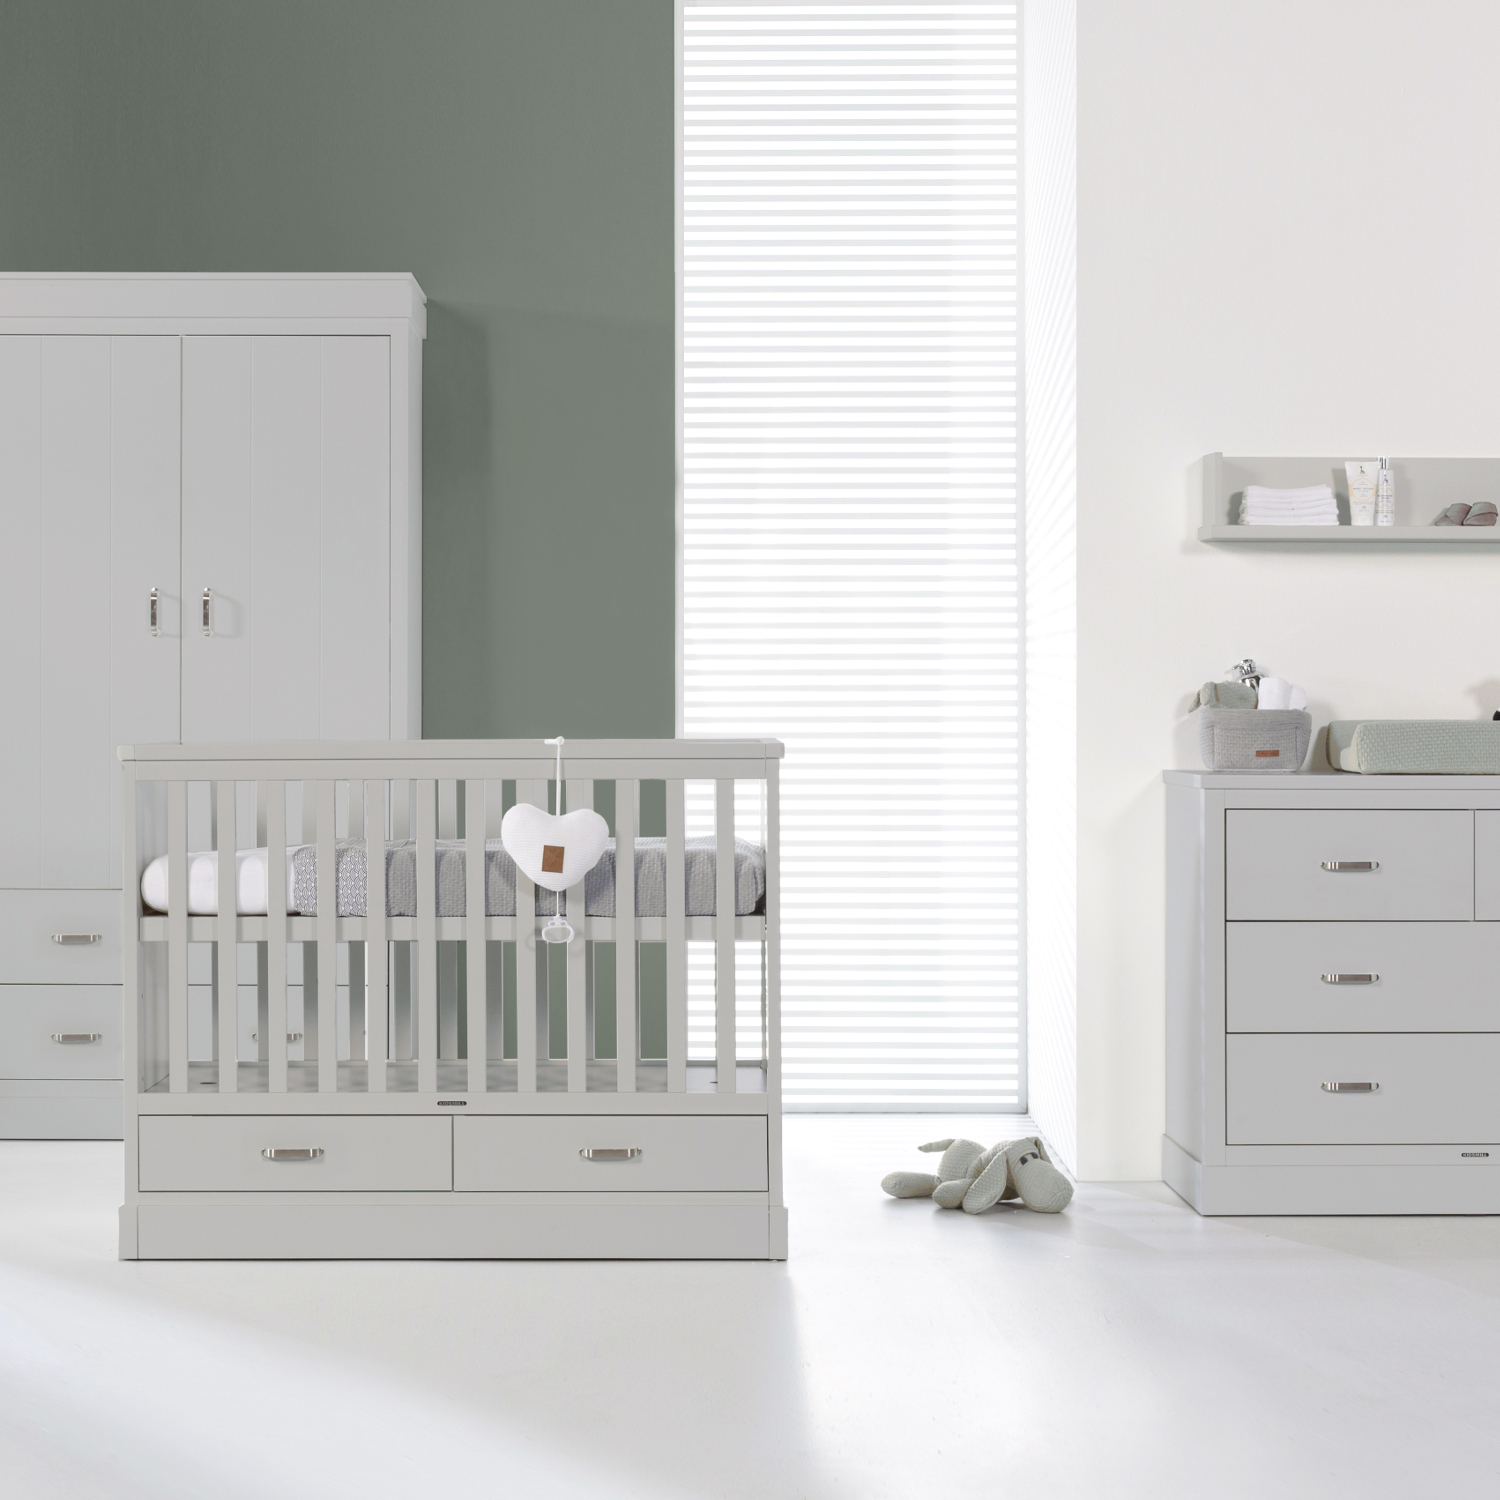 Kidsmill Newport Babykamer Grijs | Bed 60 x 120 cm + Commode + Kast 2-Deurs